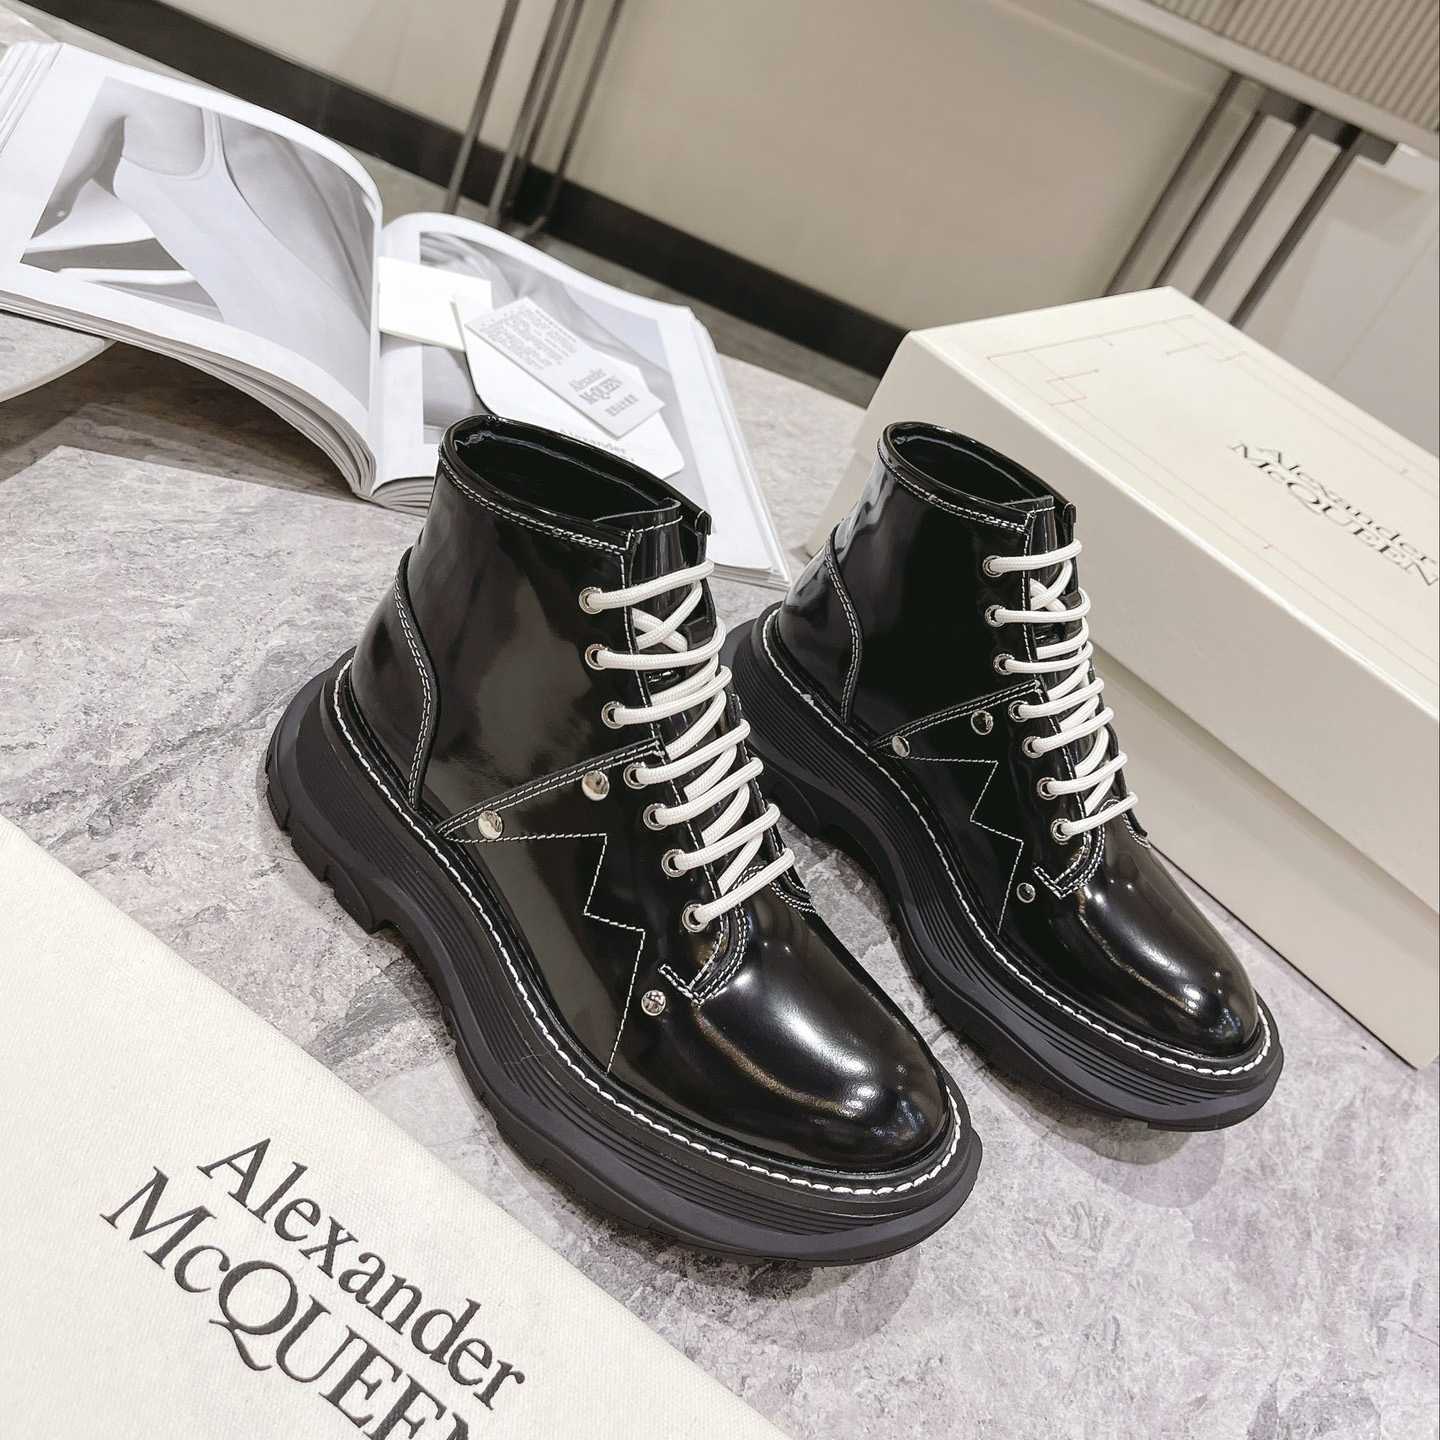 Alexander Mqueen Women's Tread Slick Boot In Black/Silver - DesignerGu